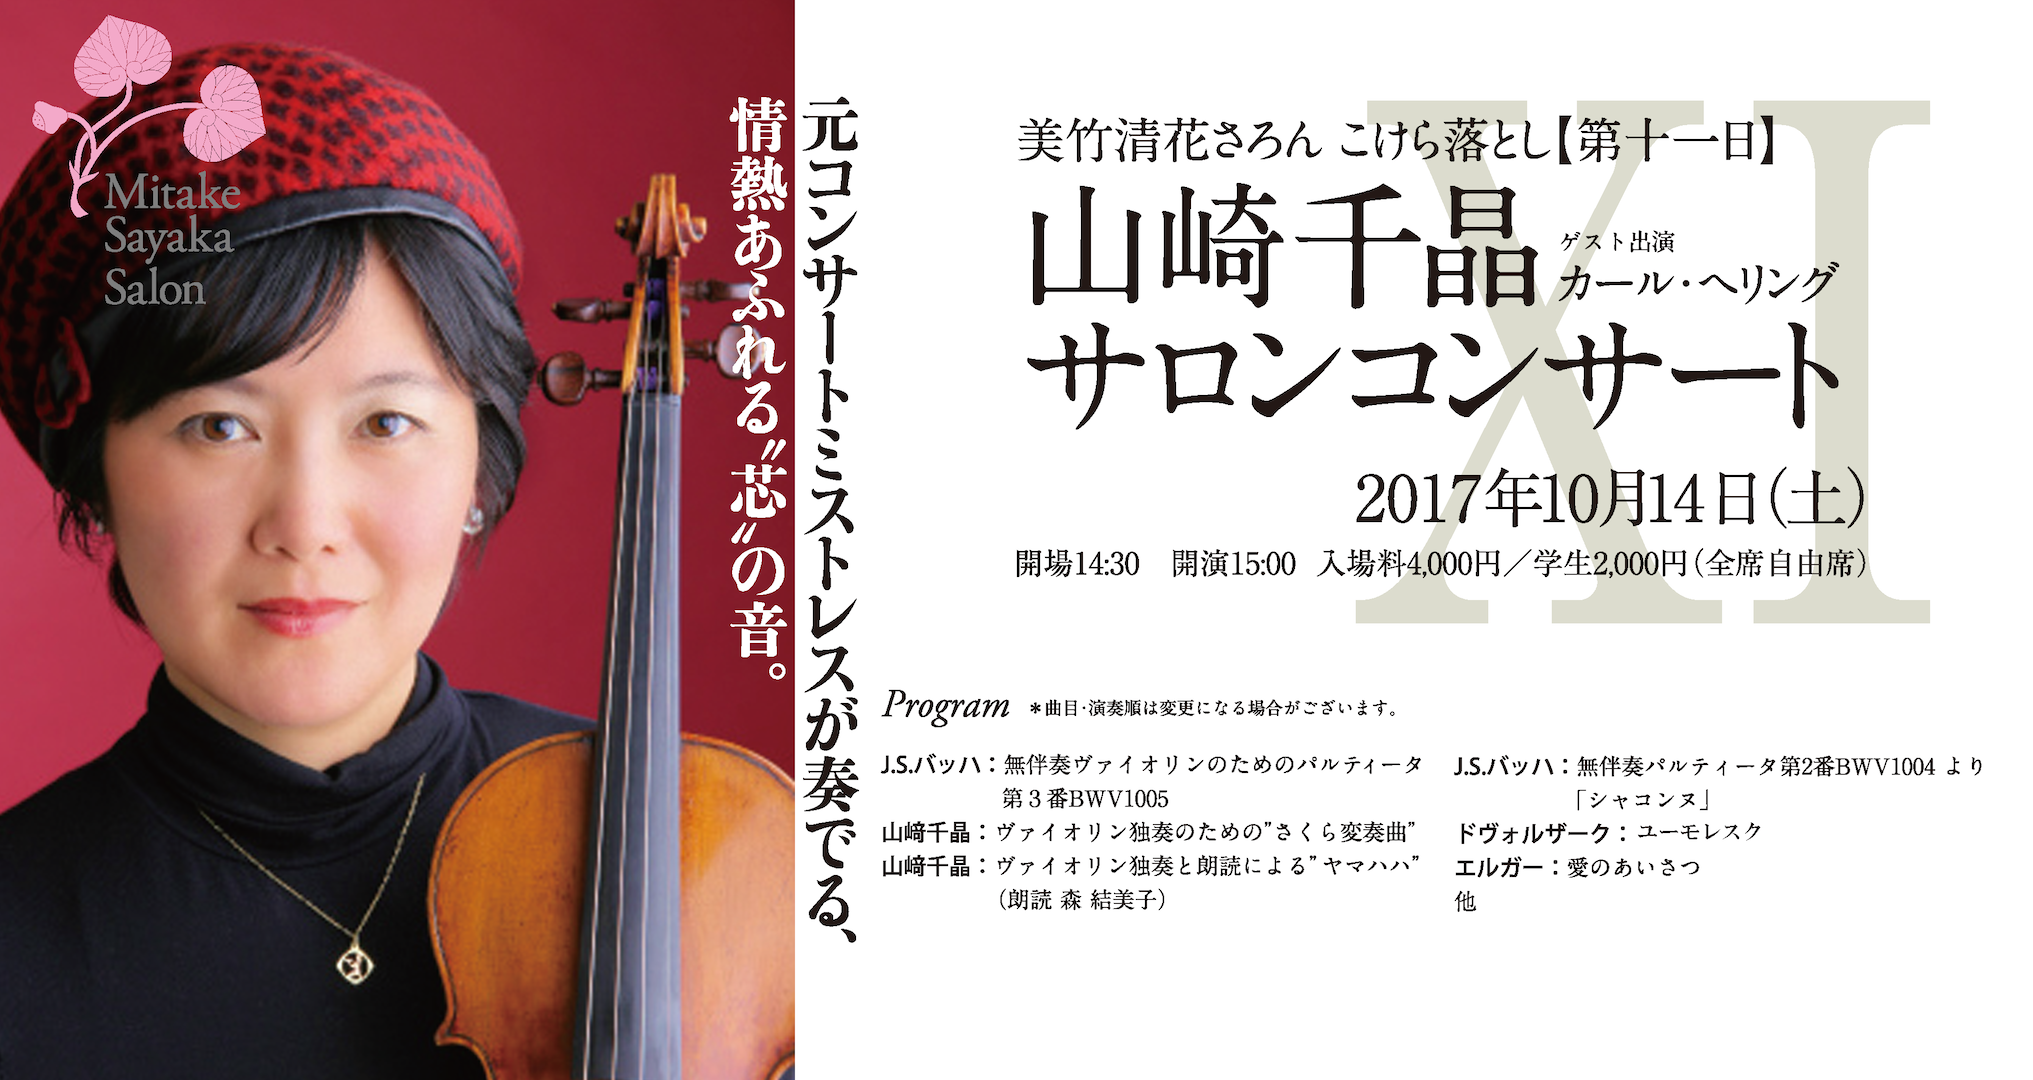 【第十一日】山崎千晶サロンコンサート-Violin&Guitar-